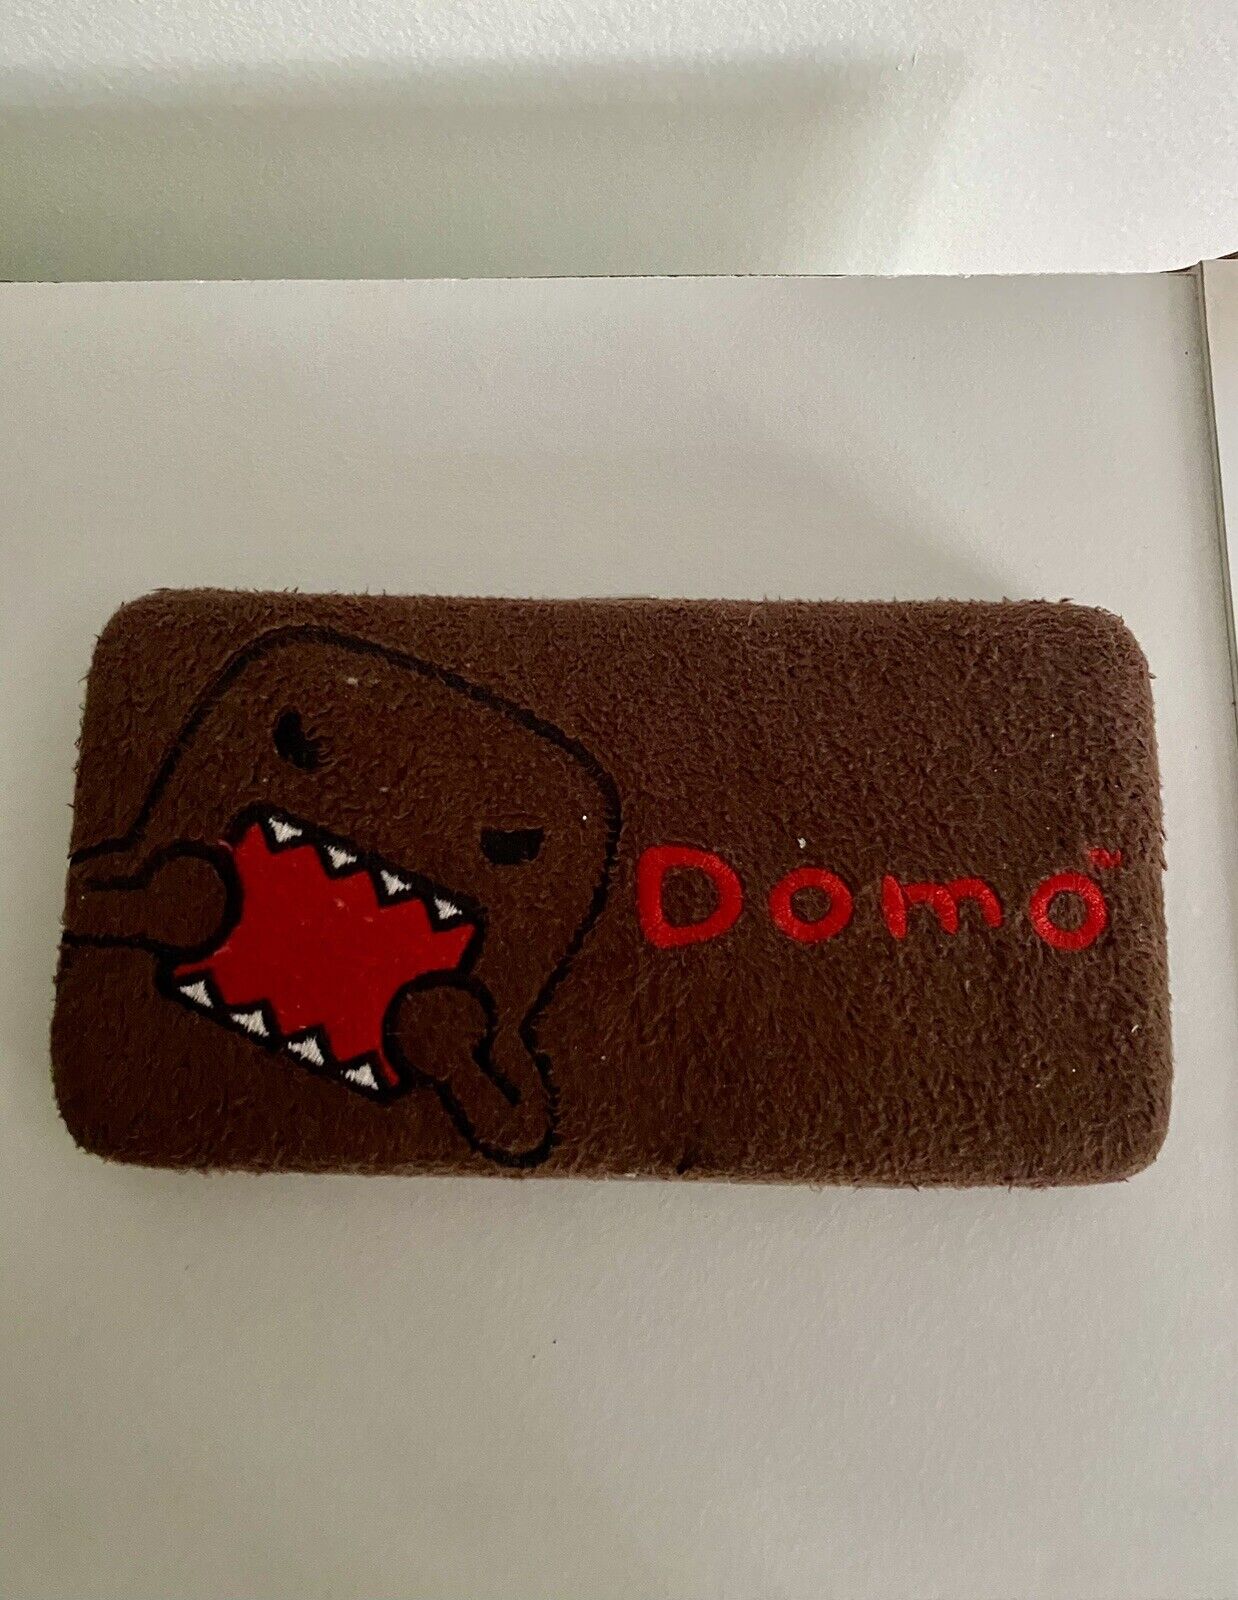 Vintage Brown Fuzzy Domo Kun Wallet Card Holder Snap Top Closure - Super Rare